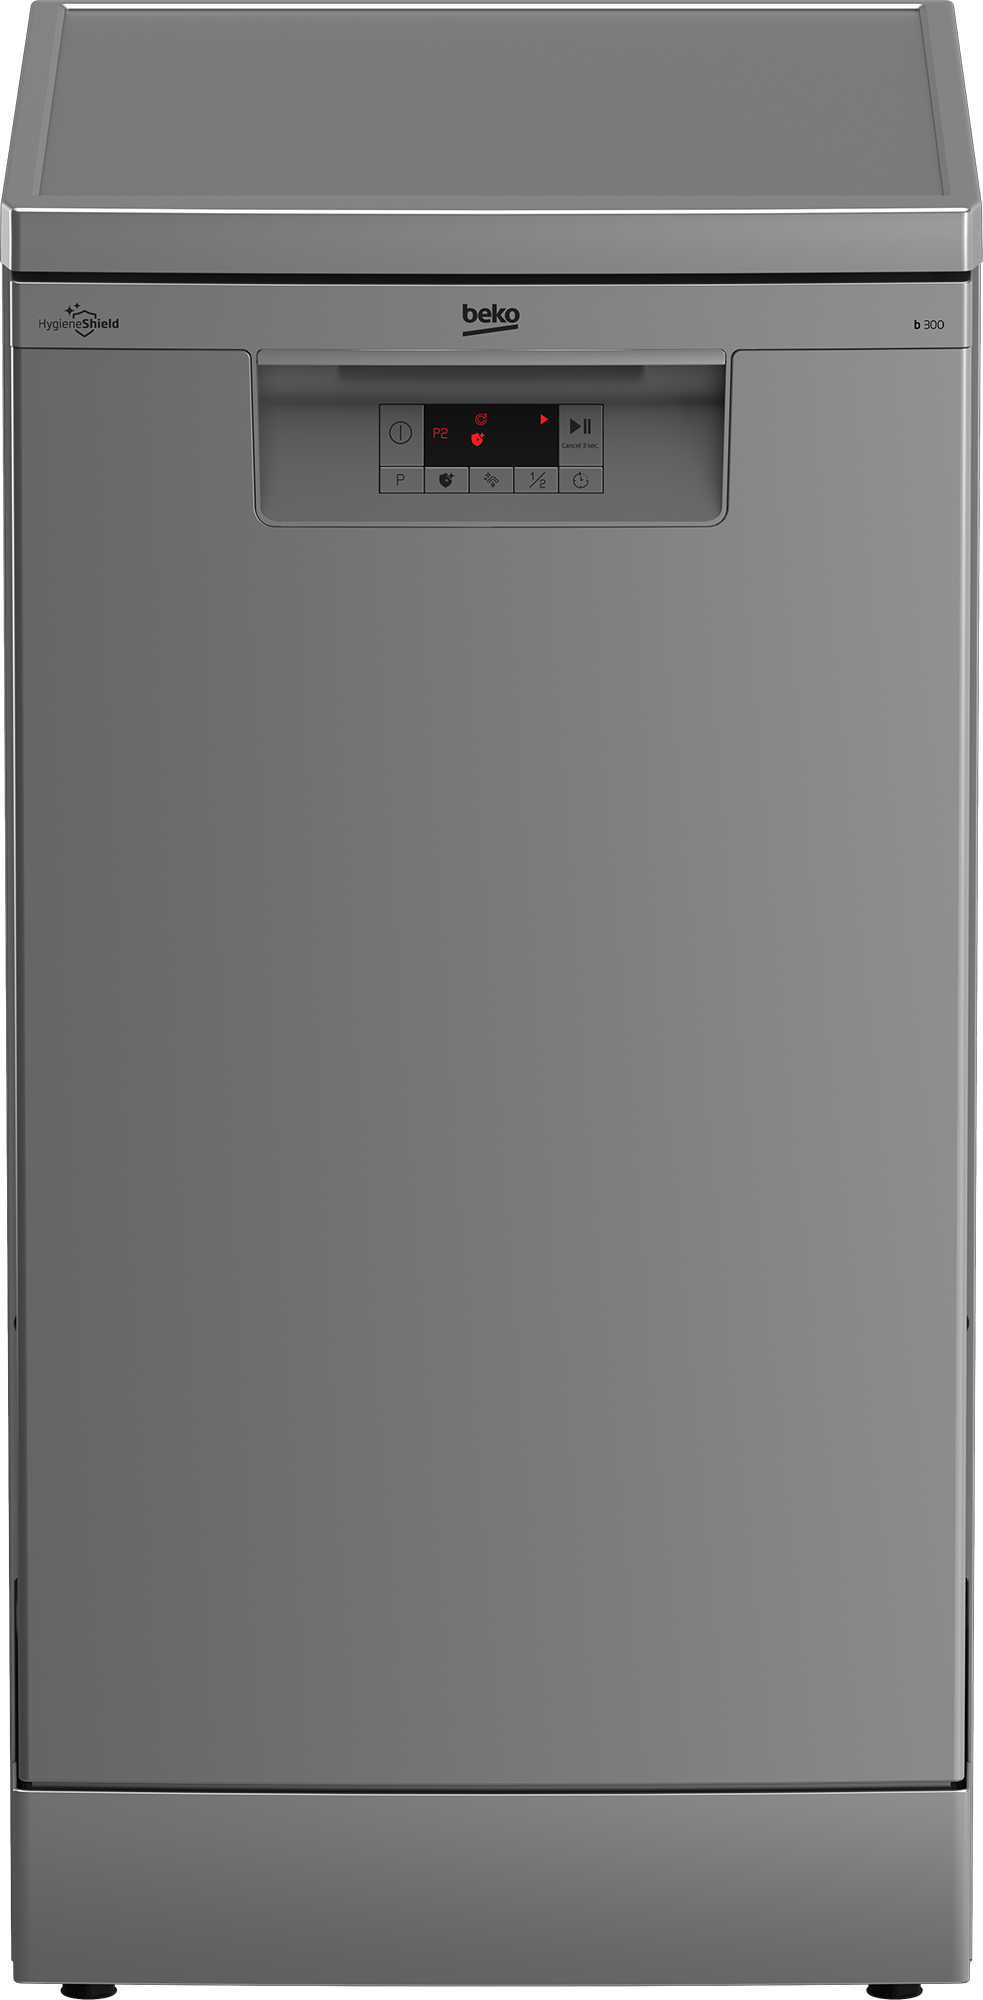 Посудомоечная машина Beko BDFS15020S серебристый посудомоечная машина miele g 5000 sc clst active серебристый